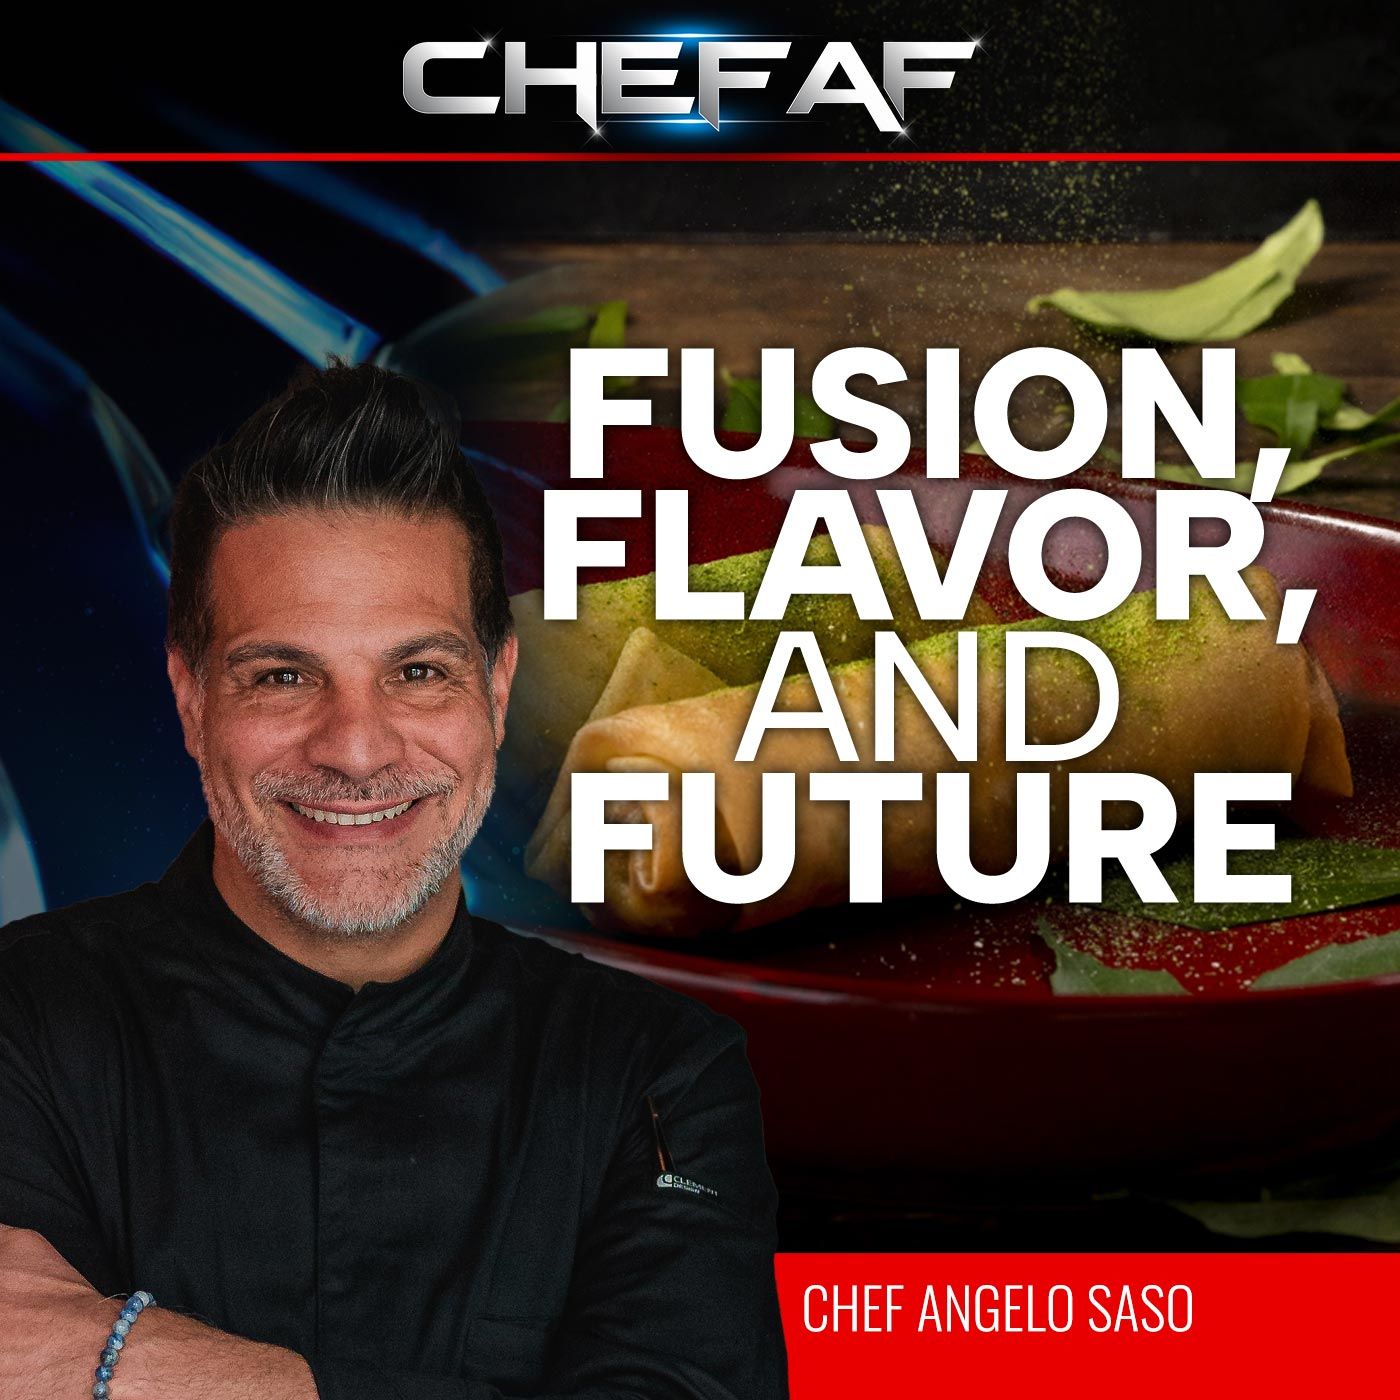 Chef Angelo Sosa: Fusion, Flavor, and Future